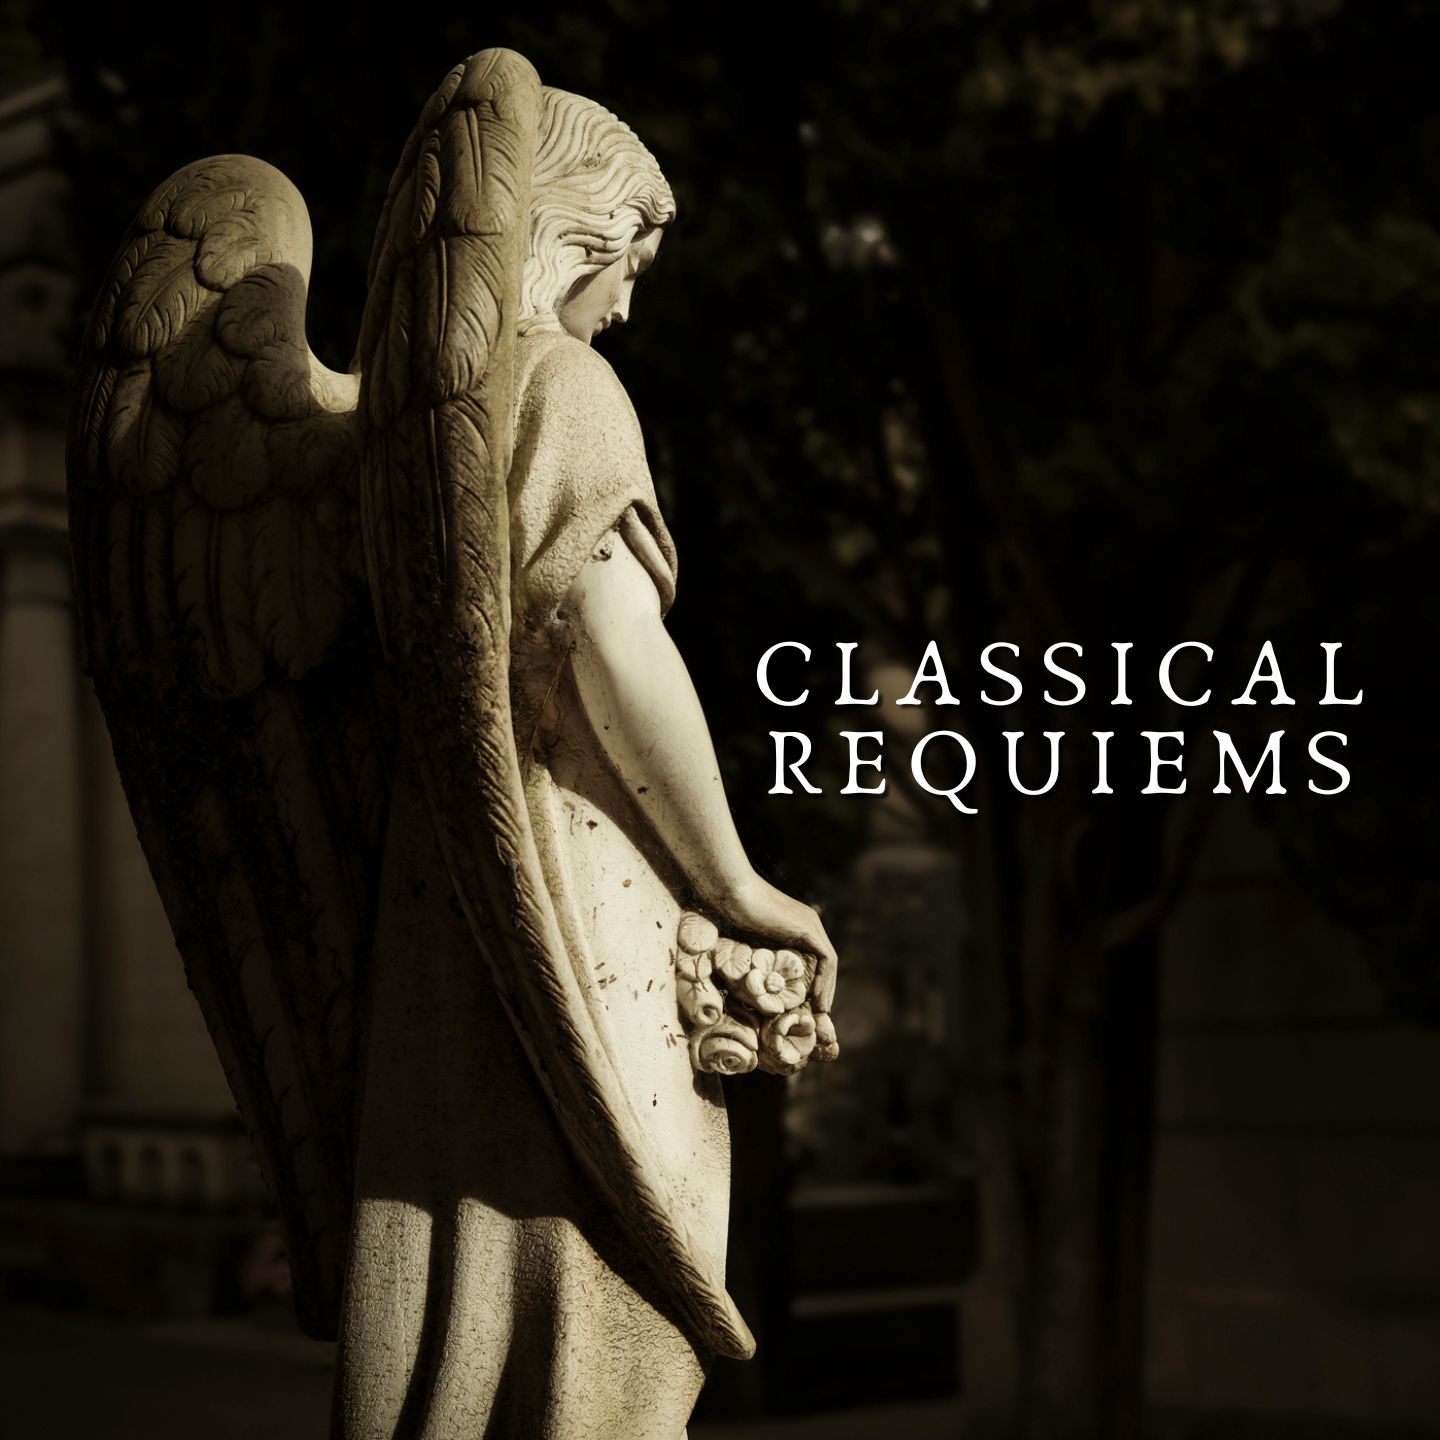 Classical Requiems